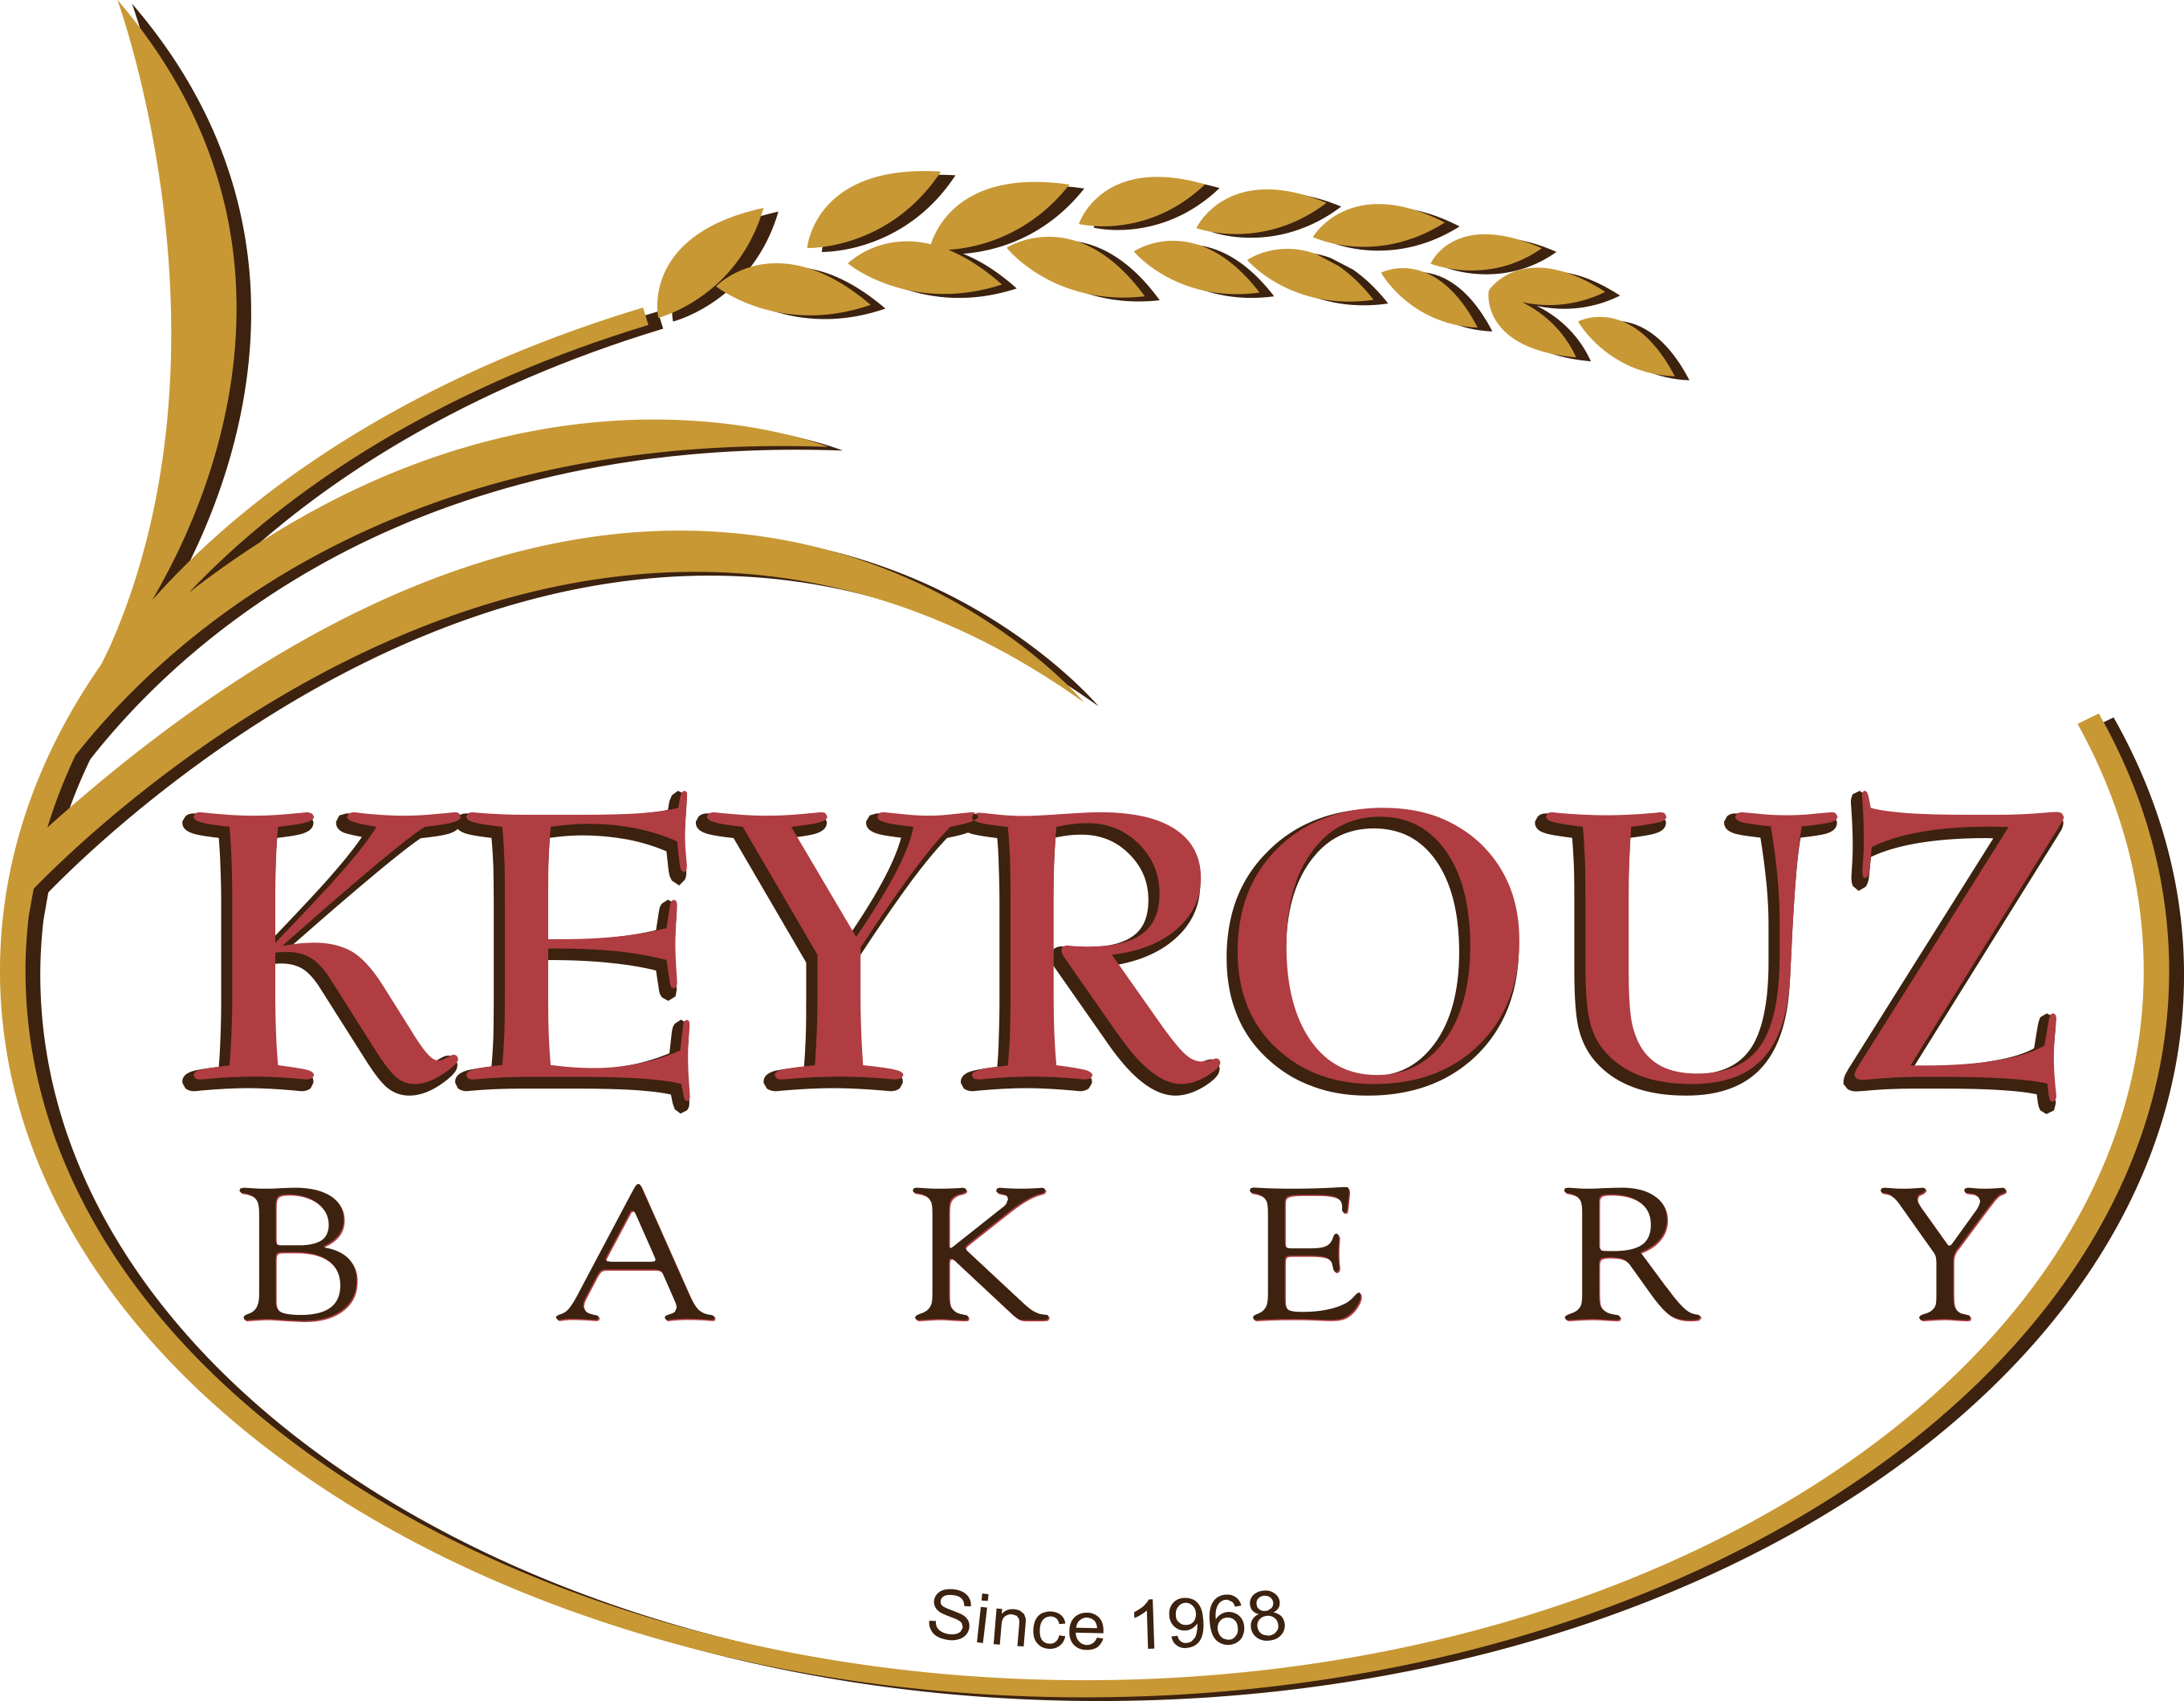 Keyrouz Bakery-since 1968 - Keyrouz Bakery (2721x2119)